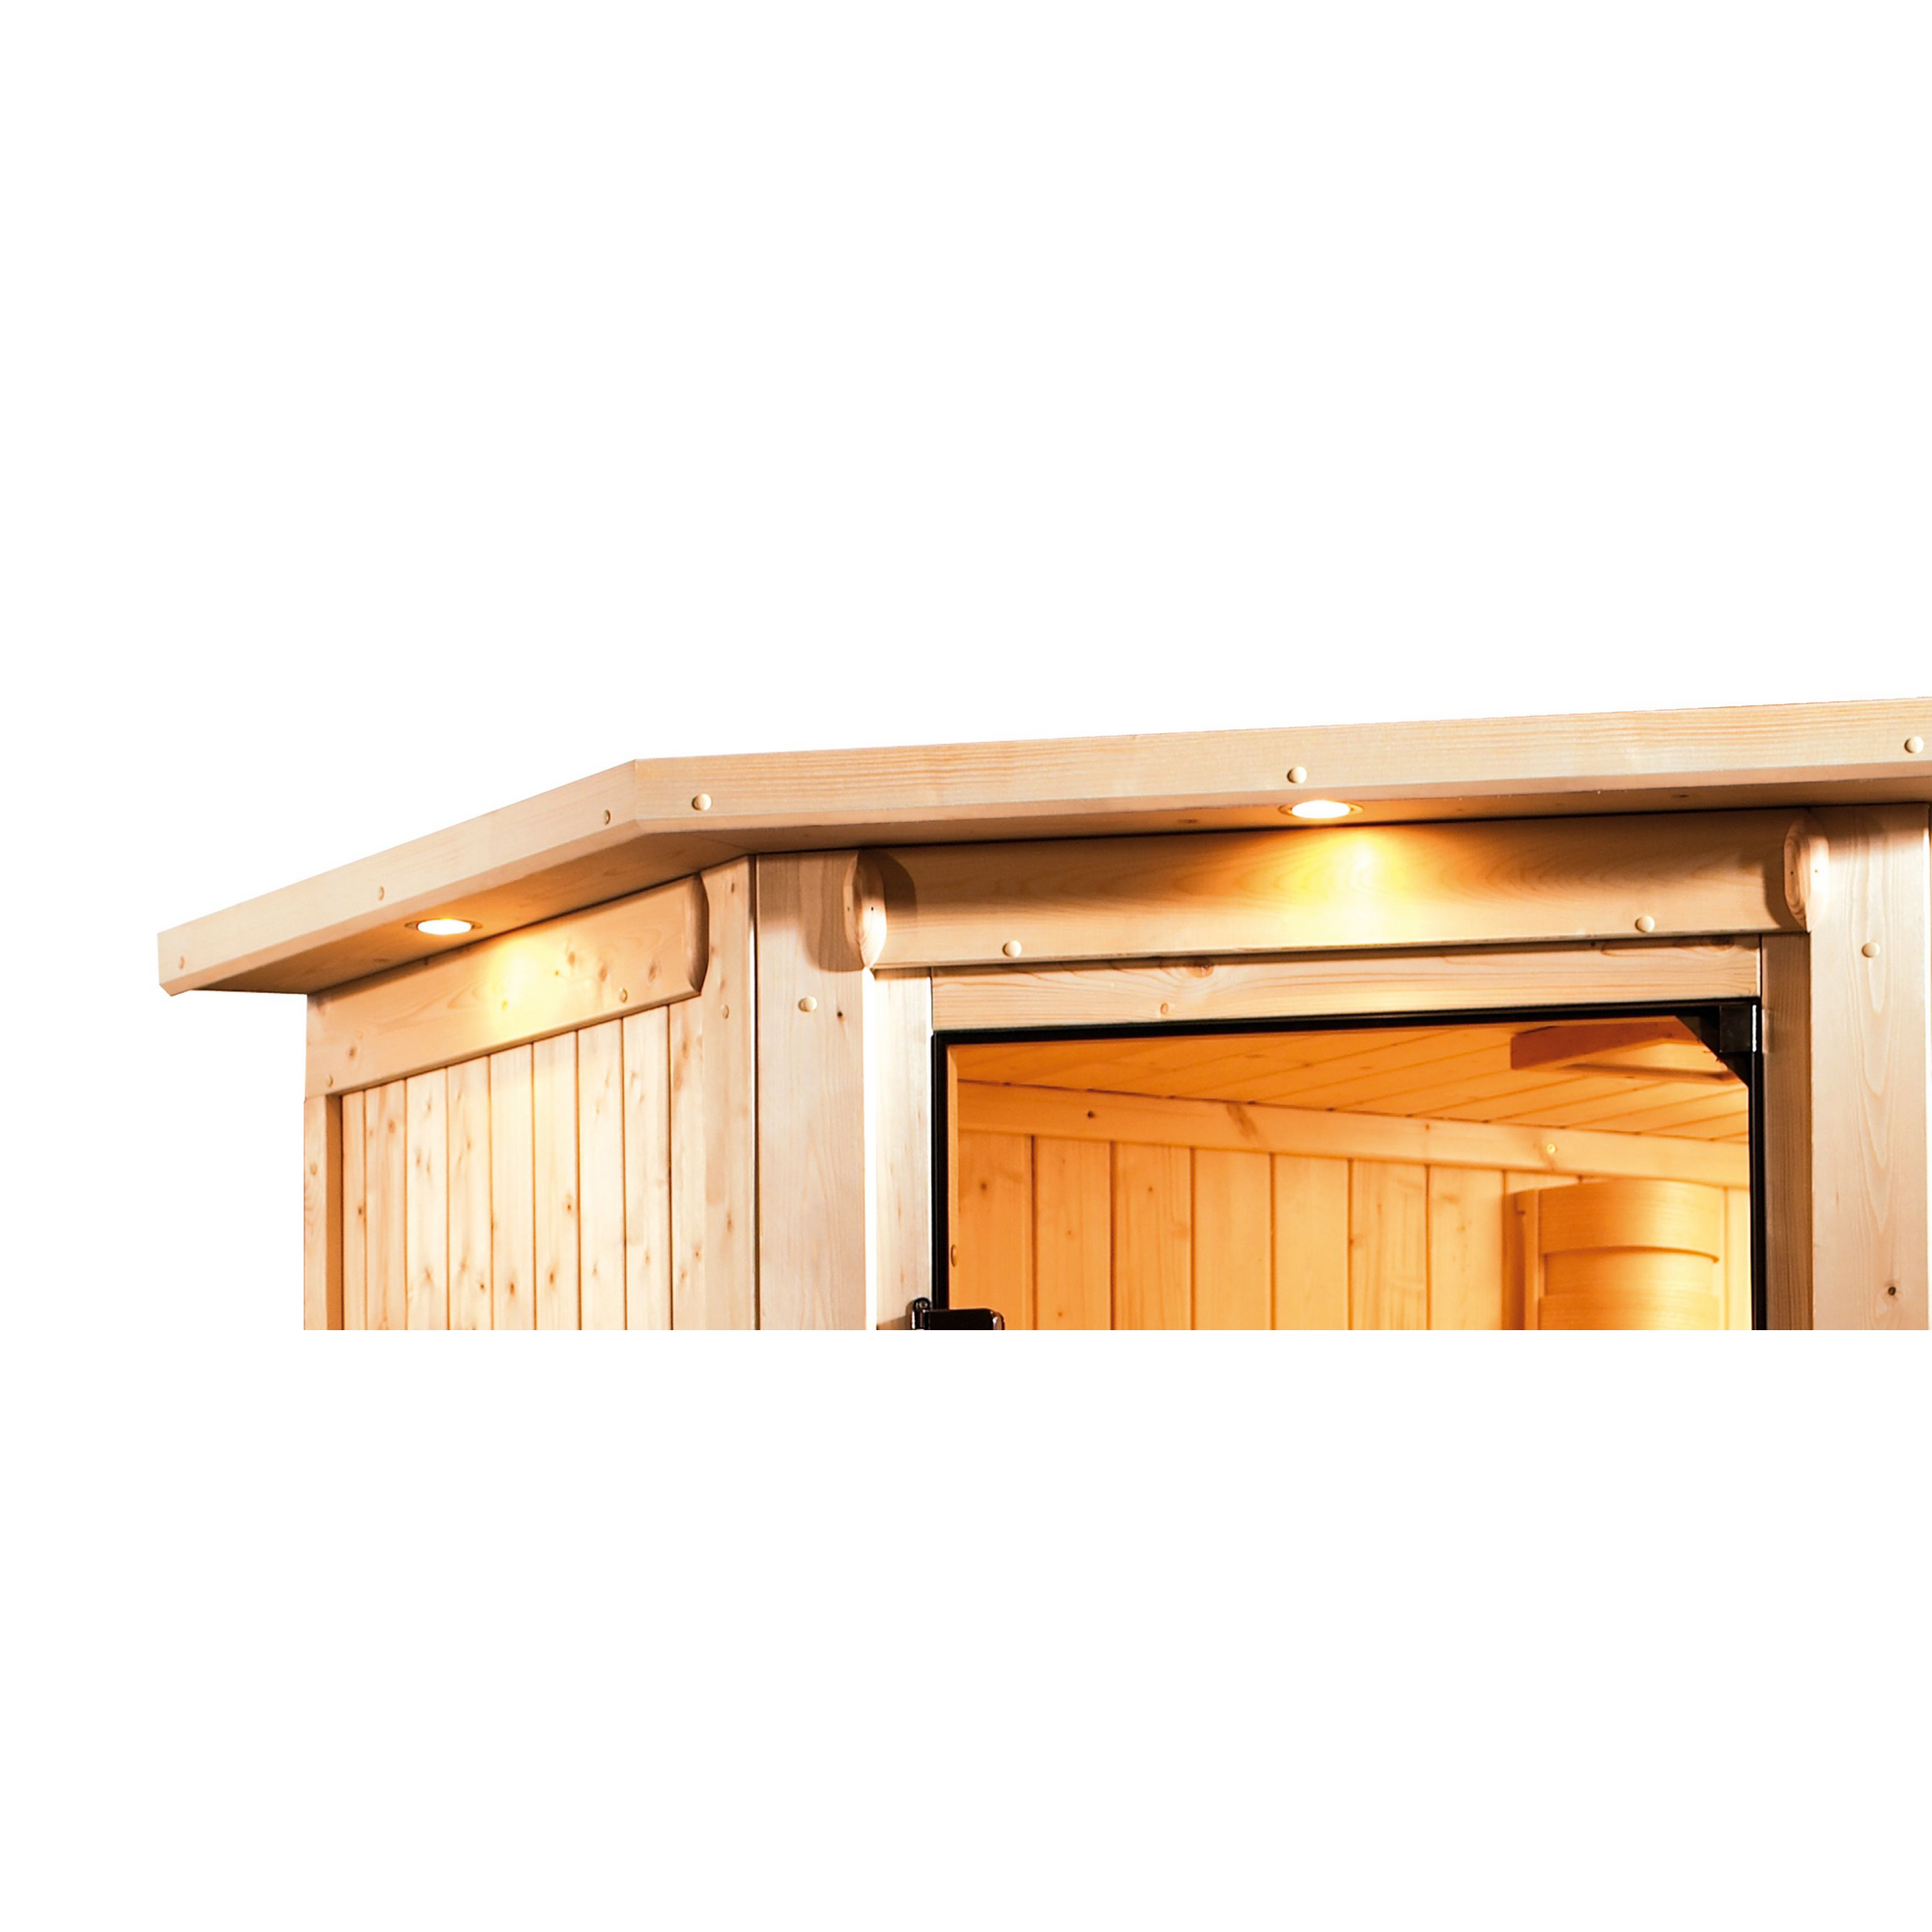 Massivholzsauna 'Gabriela' naturbelassen mit Kranz und bronzierter Tür 9 kW Bio-Ofen externe Steuerung modern 224 x 160 x 202 cm + product picture